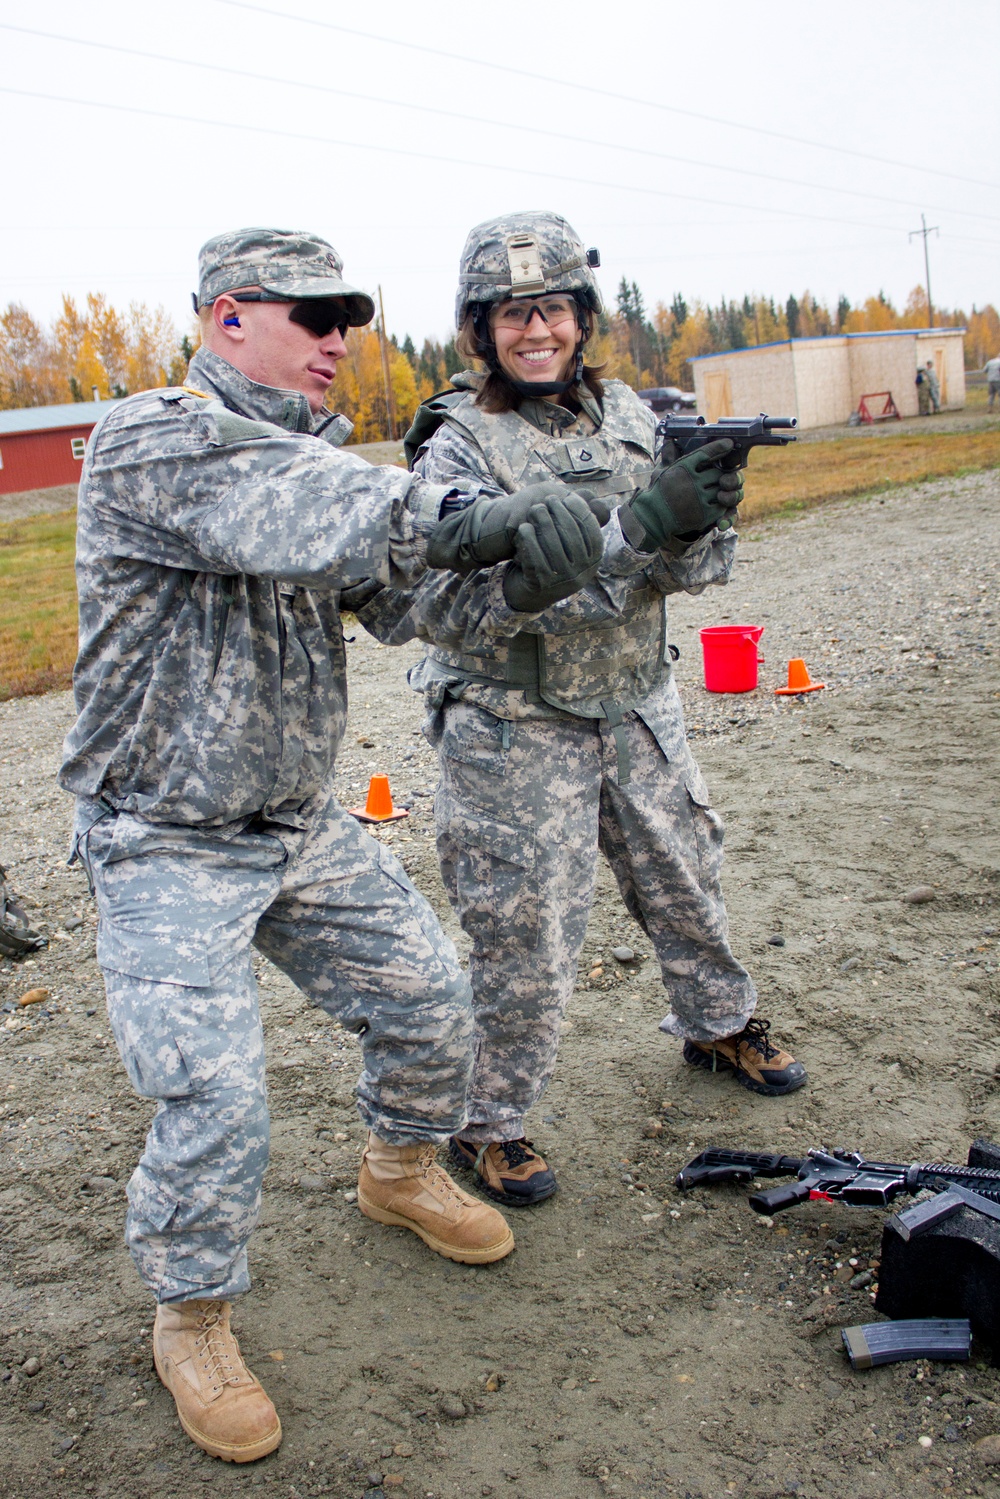 Alaska infantrymen host G.I. Jane Day